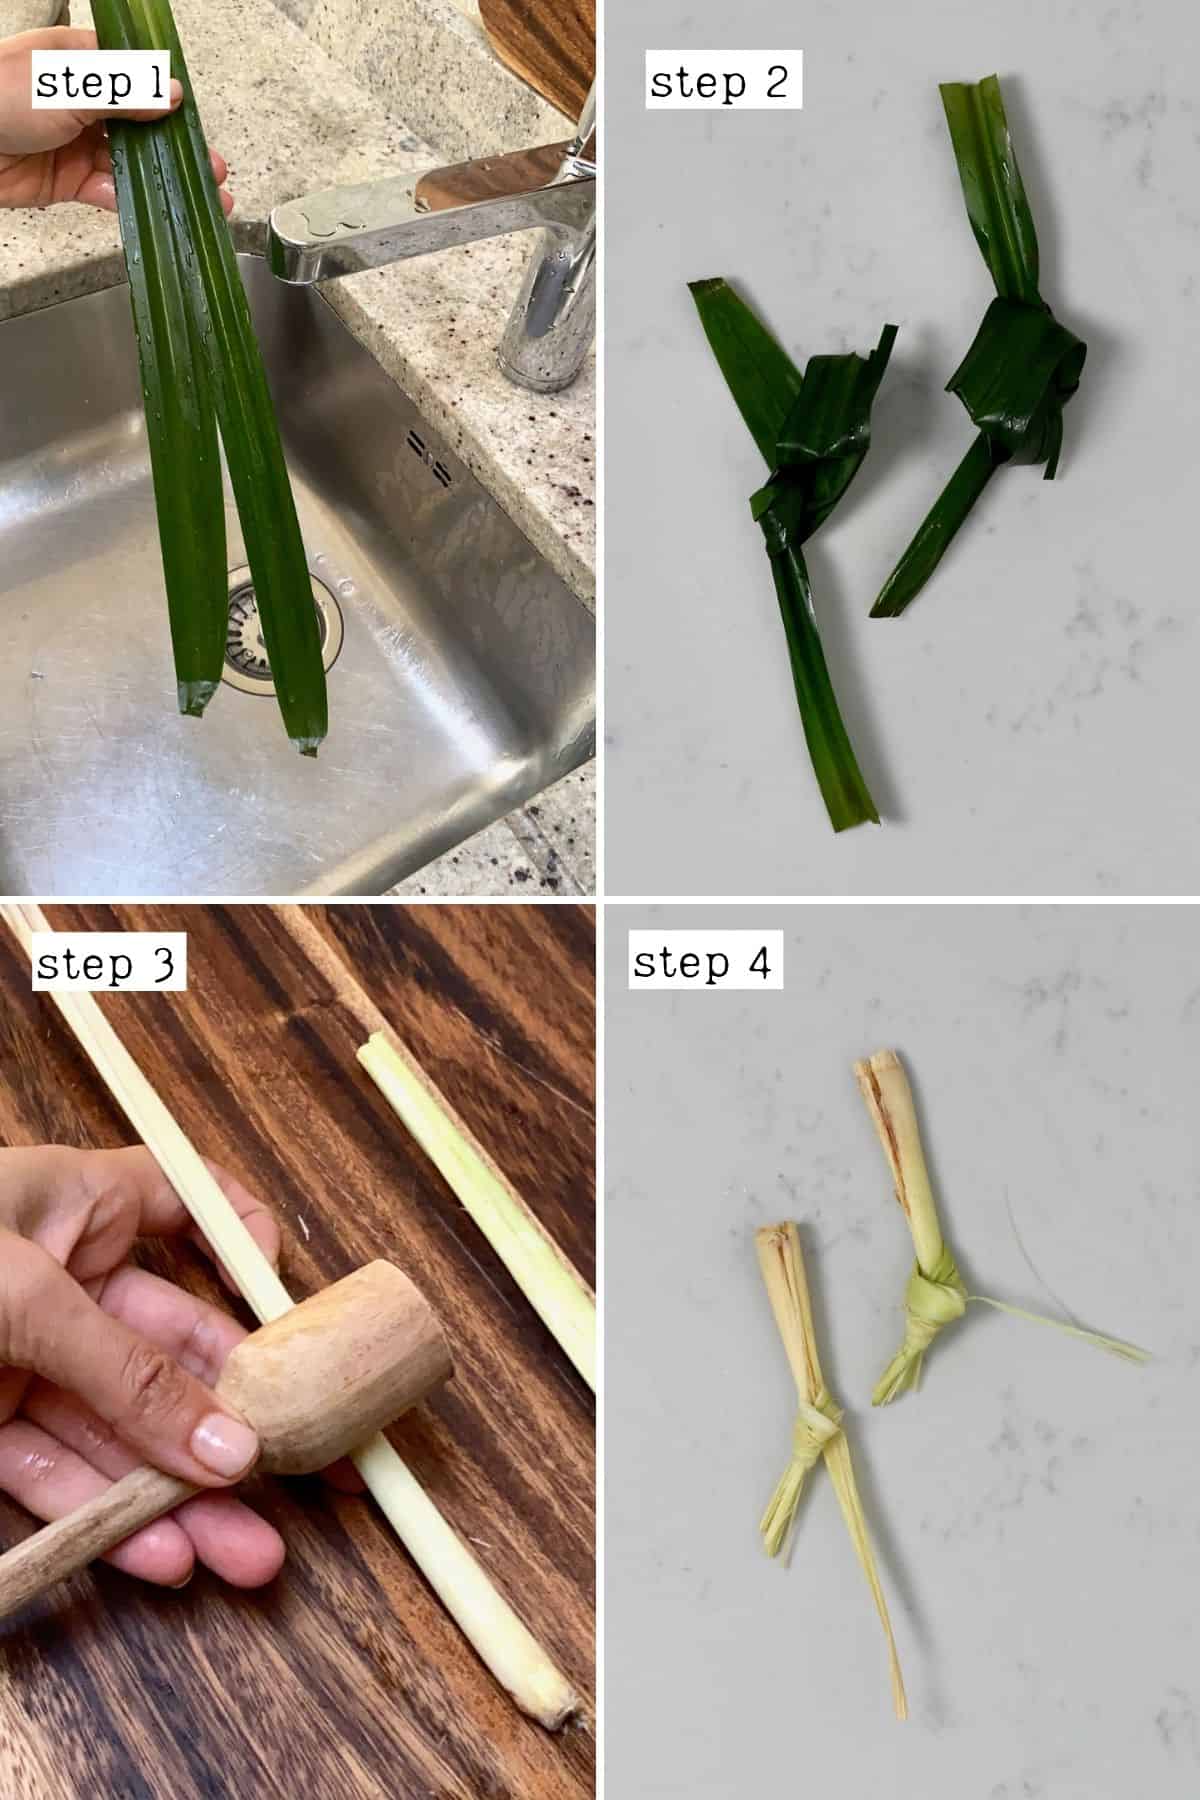 Steps for preparing pandan leaves and lemongrass